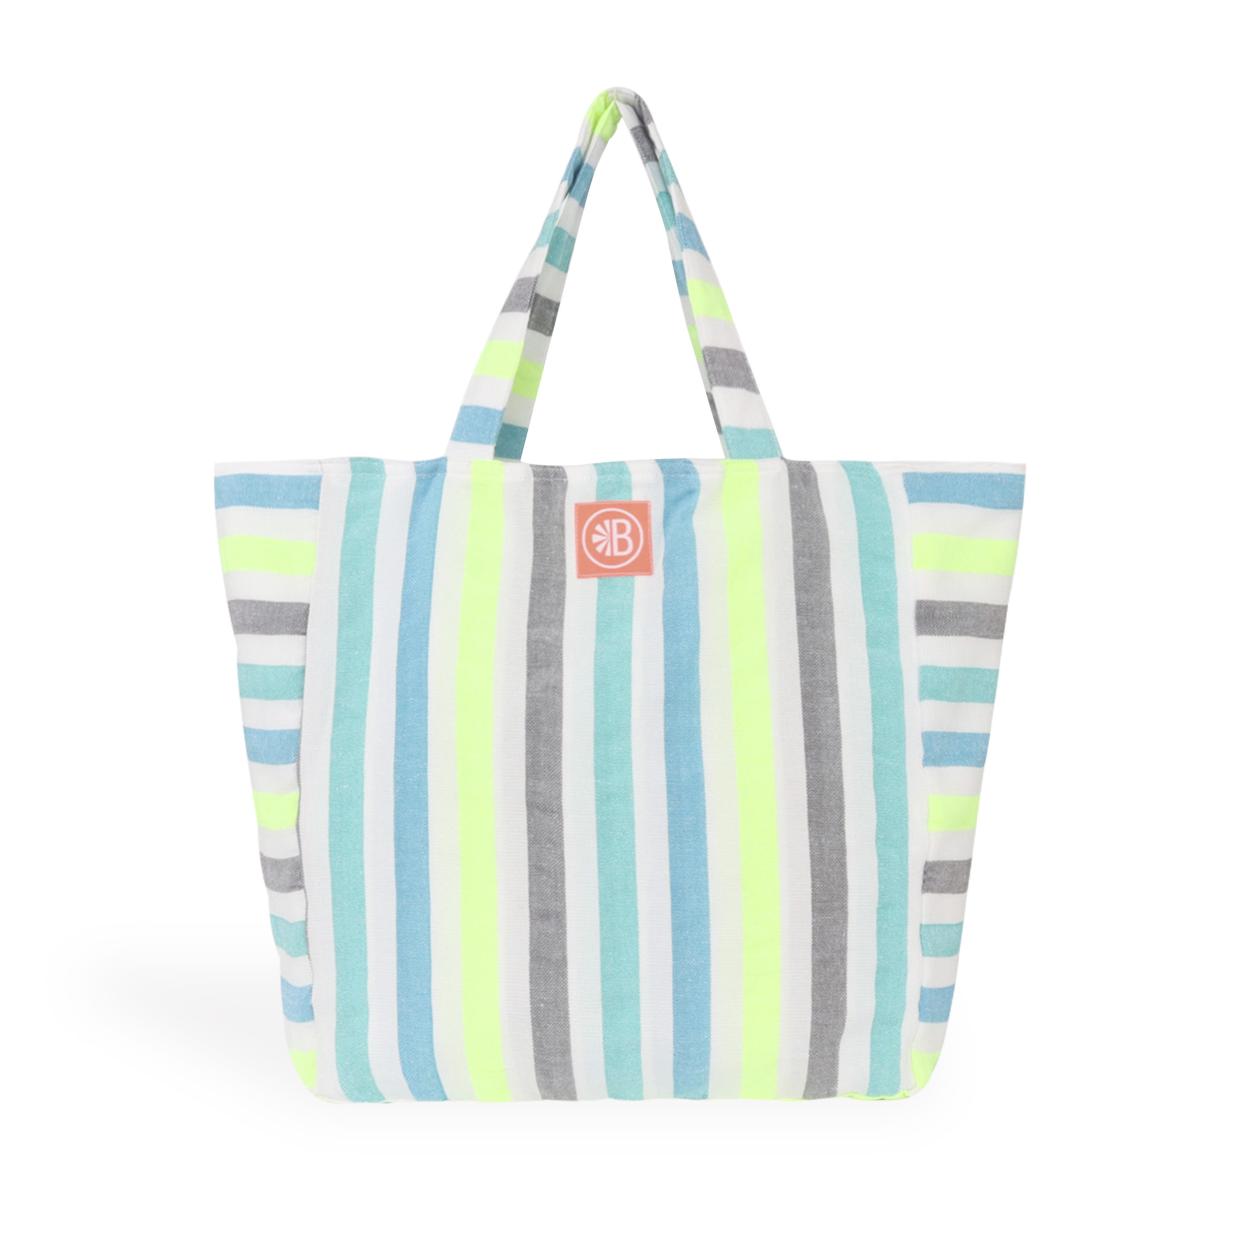 Novedades / Las Bayadas - Bolsa de Playa La Samantha / Las Bayadas cre la bolsa de playa perfecta usando la misma tcnica para la creacin de las mantas de playa: grande, ligera, colorida y fcil de lavar.